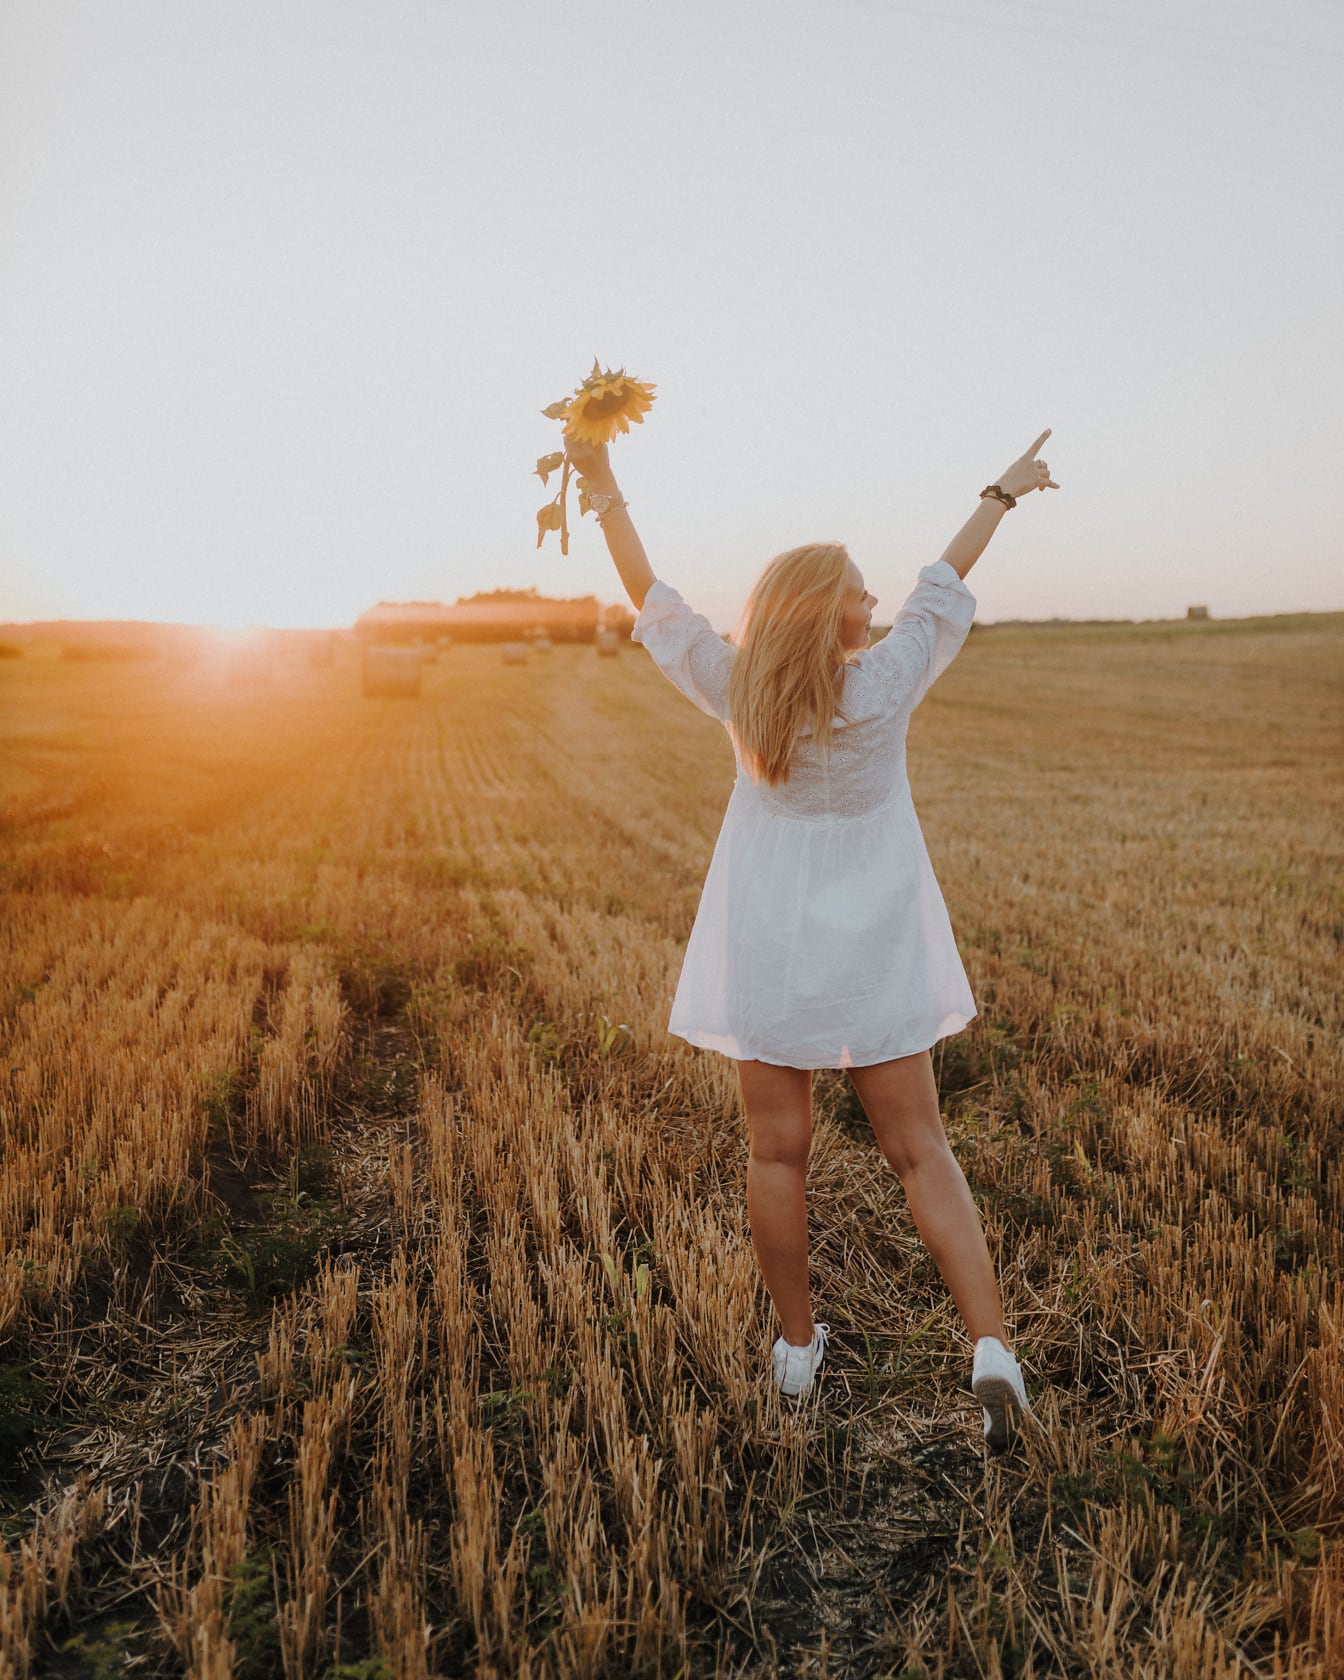 Wanita muda yang bahagia berdiri di ladang gandum saat matahari terbenam